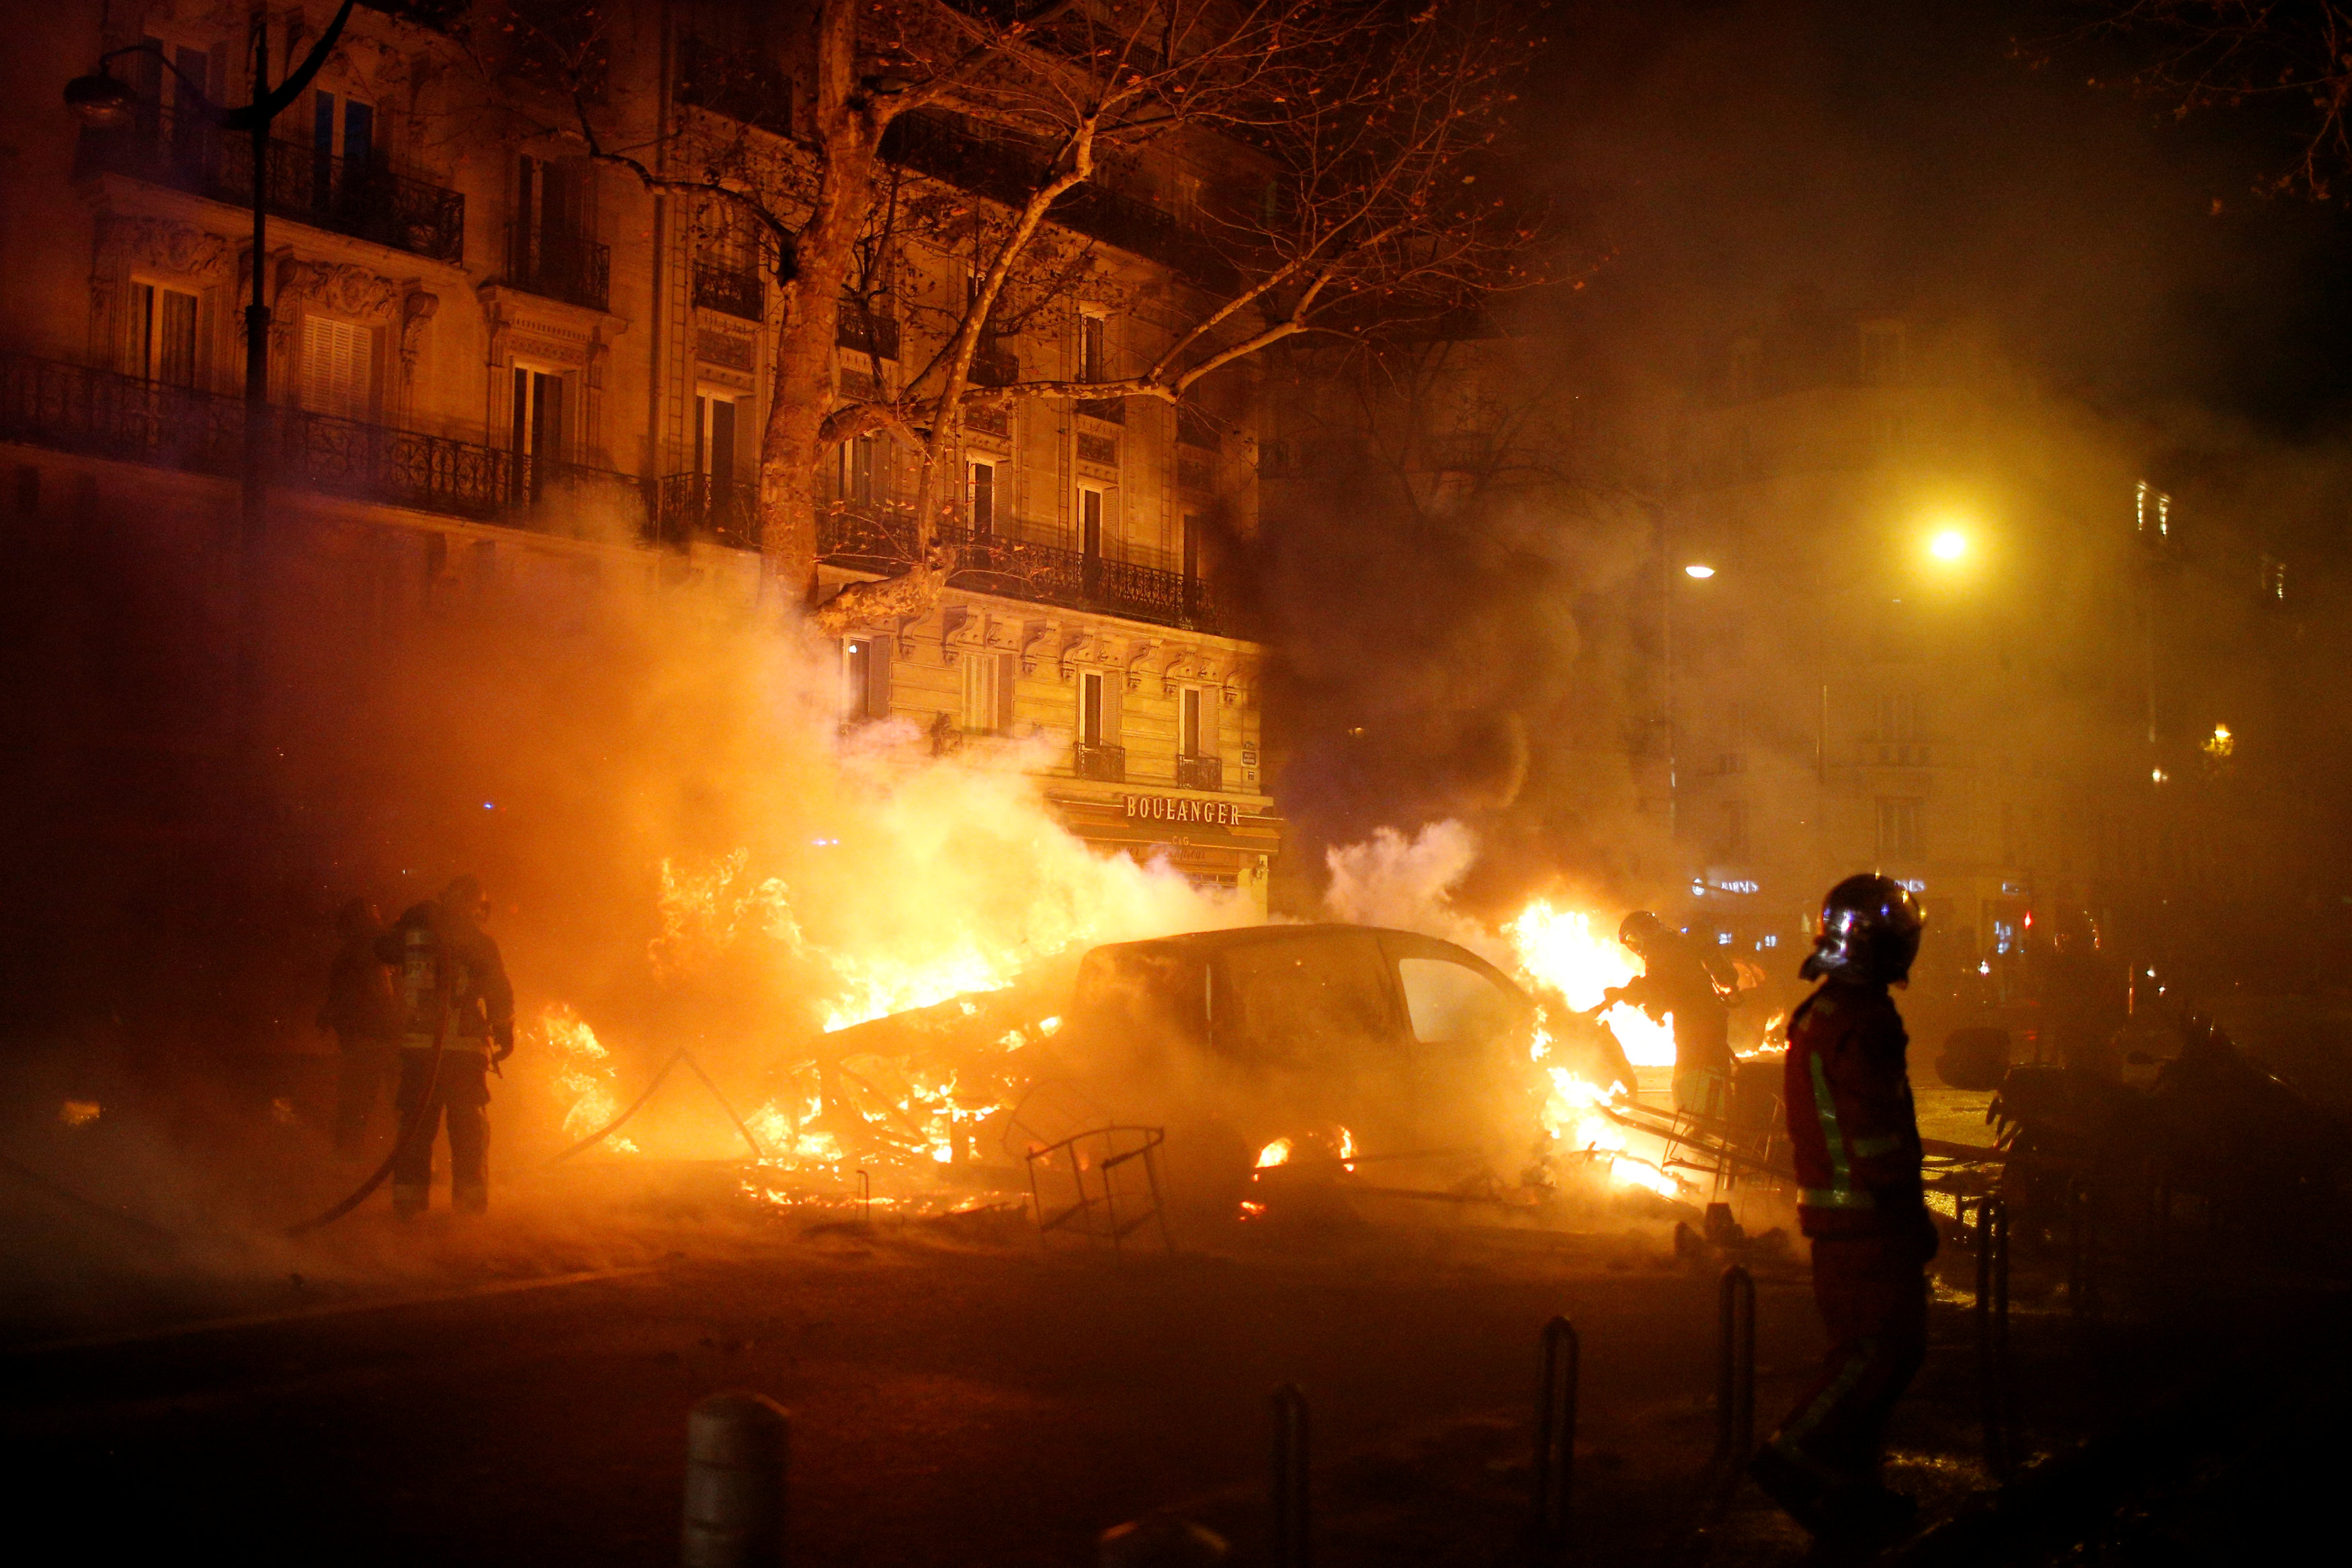 إحراق السيارات والعنف أهم ما يميز الحراك الفرنسى